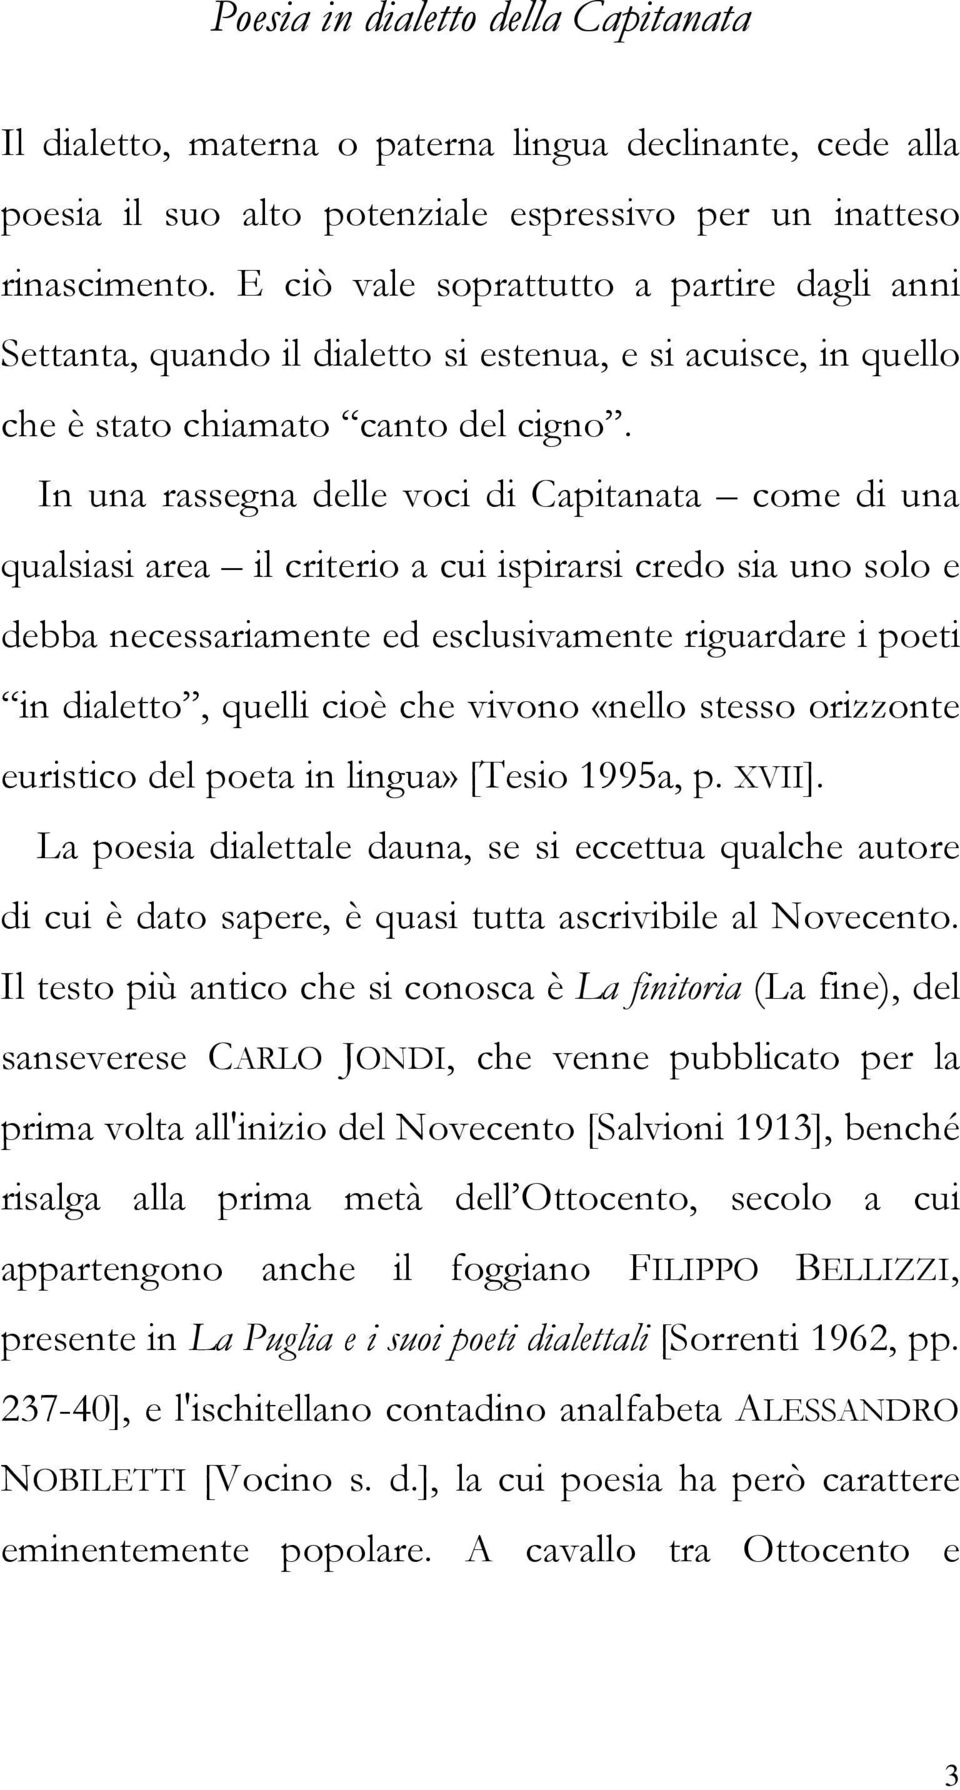 Poesie Di Natale Anni 70.Francesco Granatiero Poesia In Dialetto Della Capitanata Pdf Download Gratuito